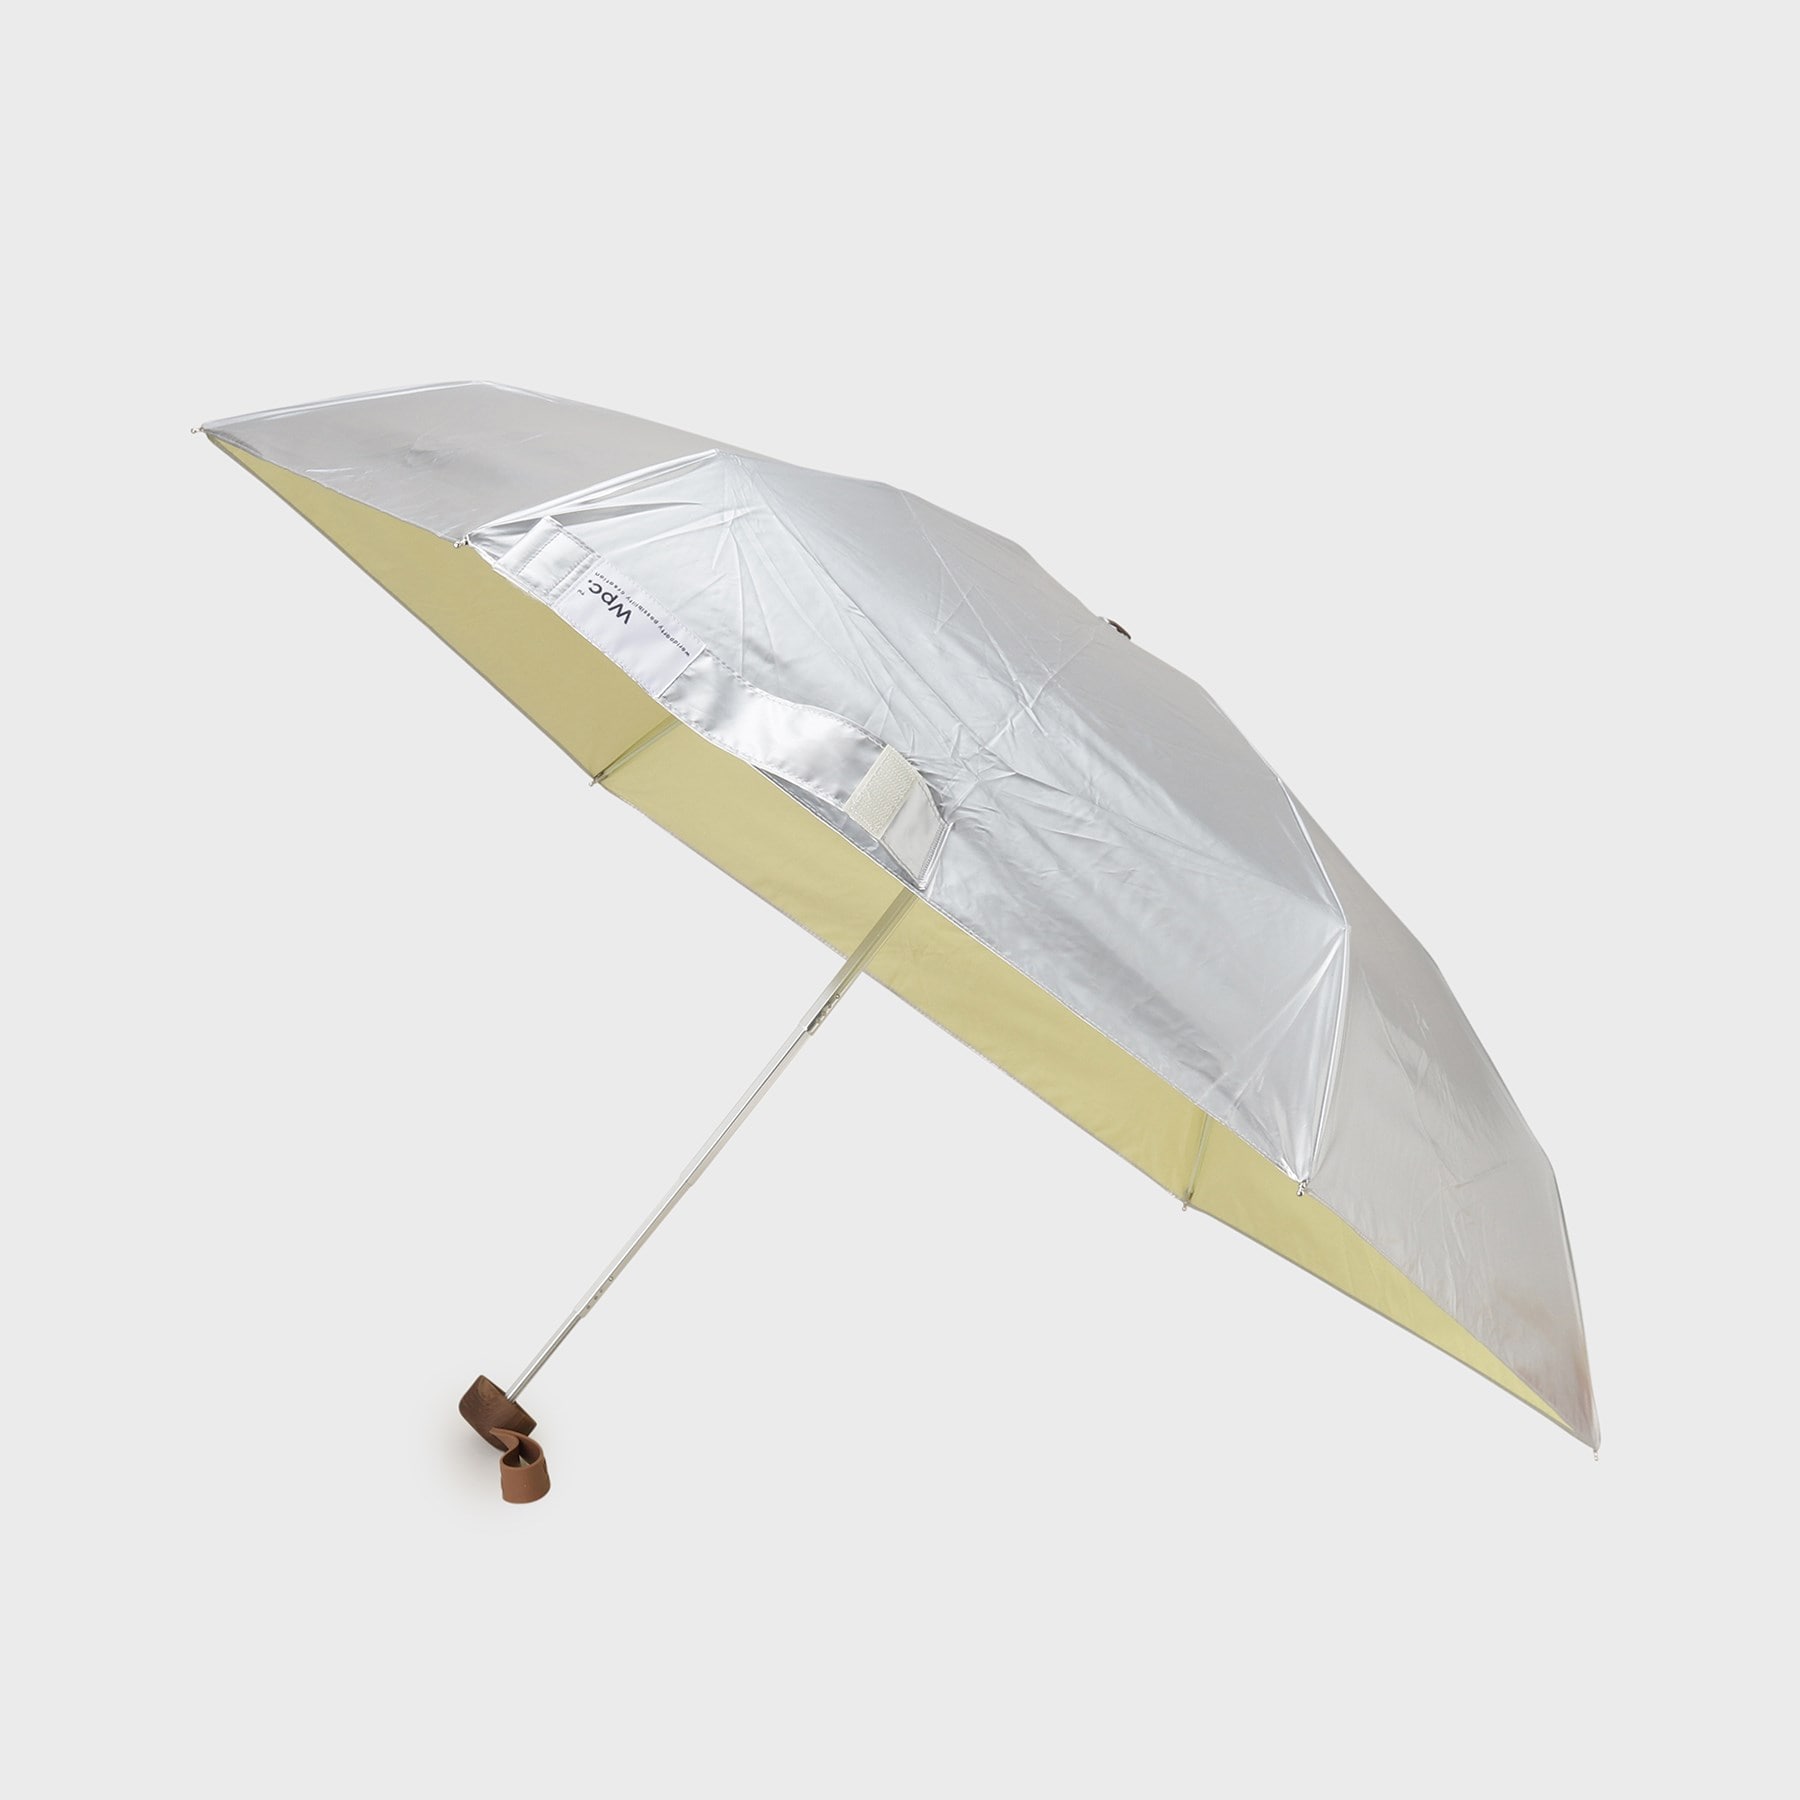 ギャレスト(GALLEST)の【Wpc．】晴雨兼用折りたたみ傘 シルバー(006)